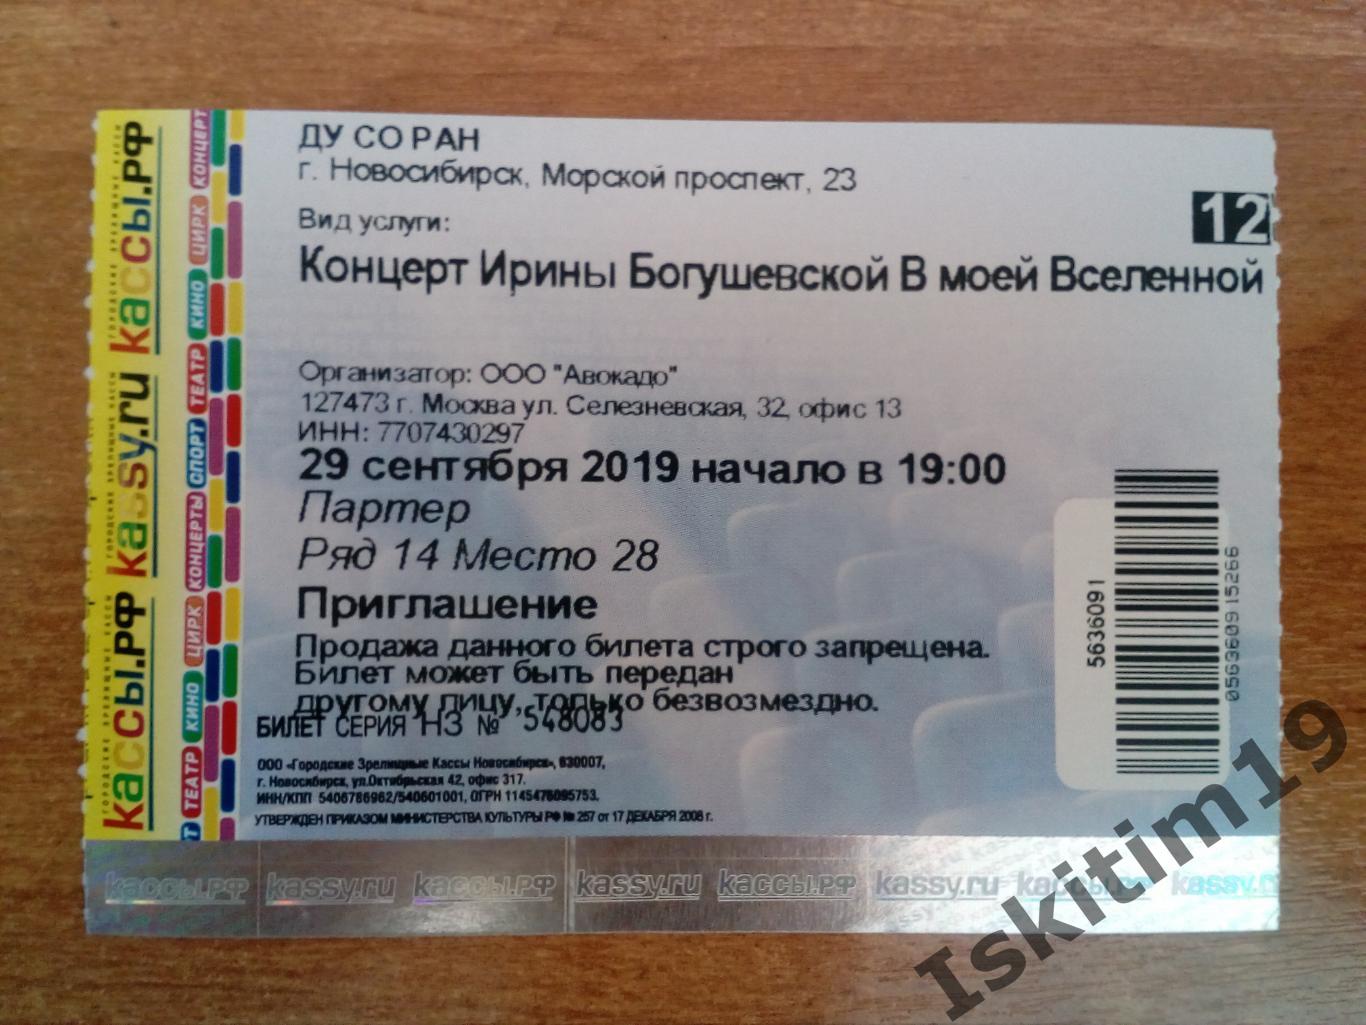 Приглашение (билет) на концерт Ирины Богушевской 29.09.2019 Новосибирск